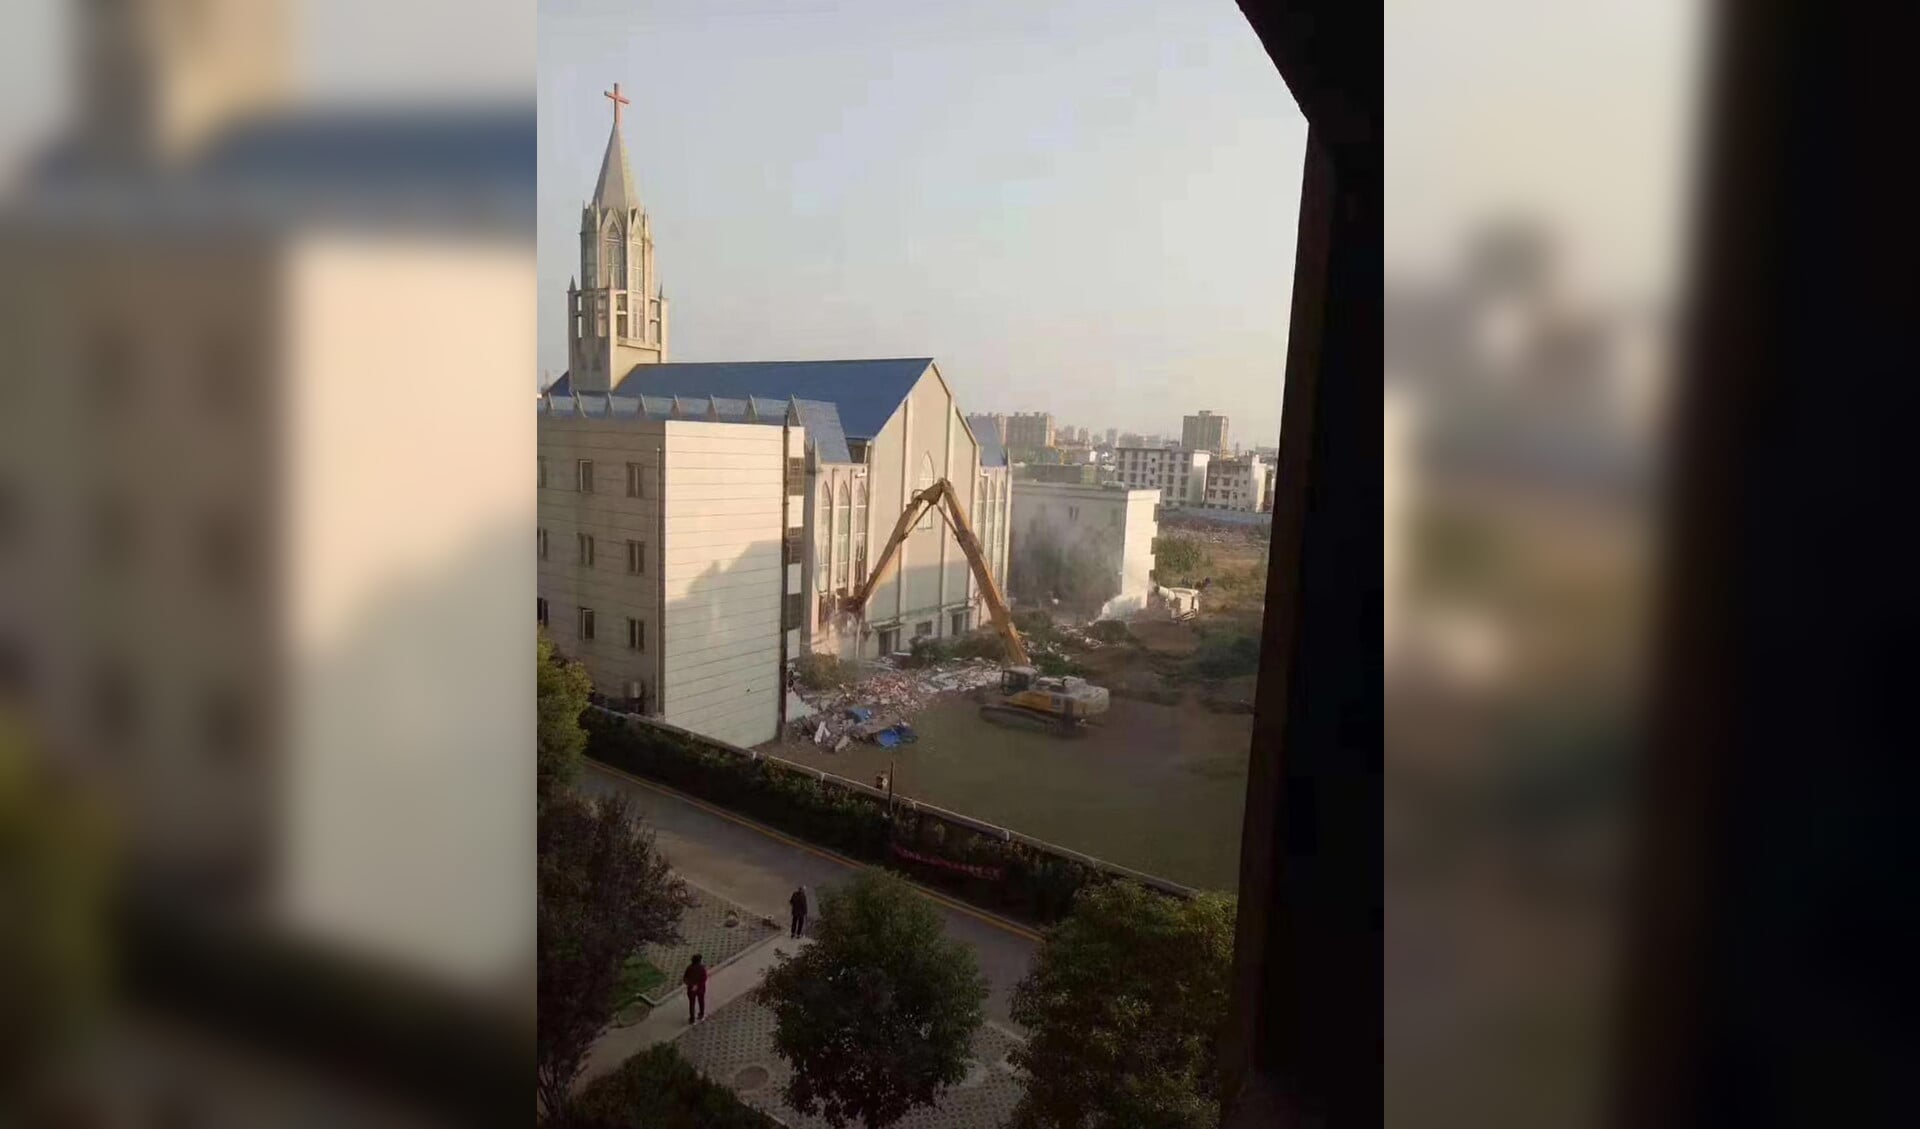 De lokale autoriteiten stuurden een bulldozer naar een megakerk in Funan. ­­De kerkgangers waren op dat moment bezig met een dienst.